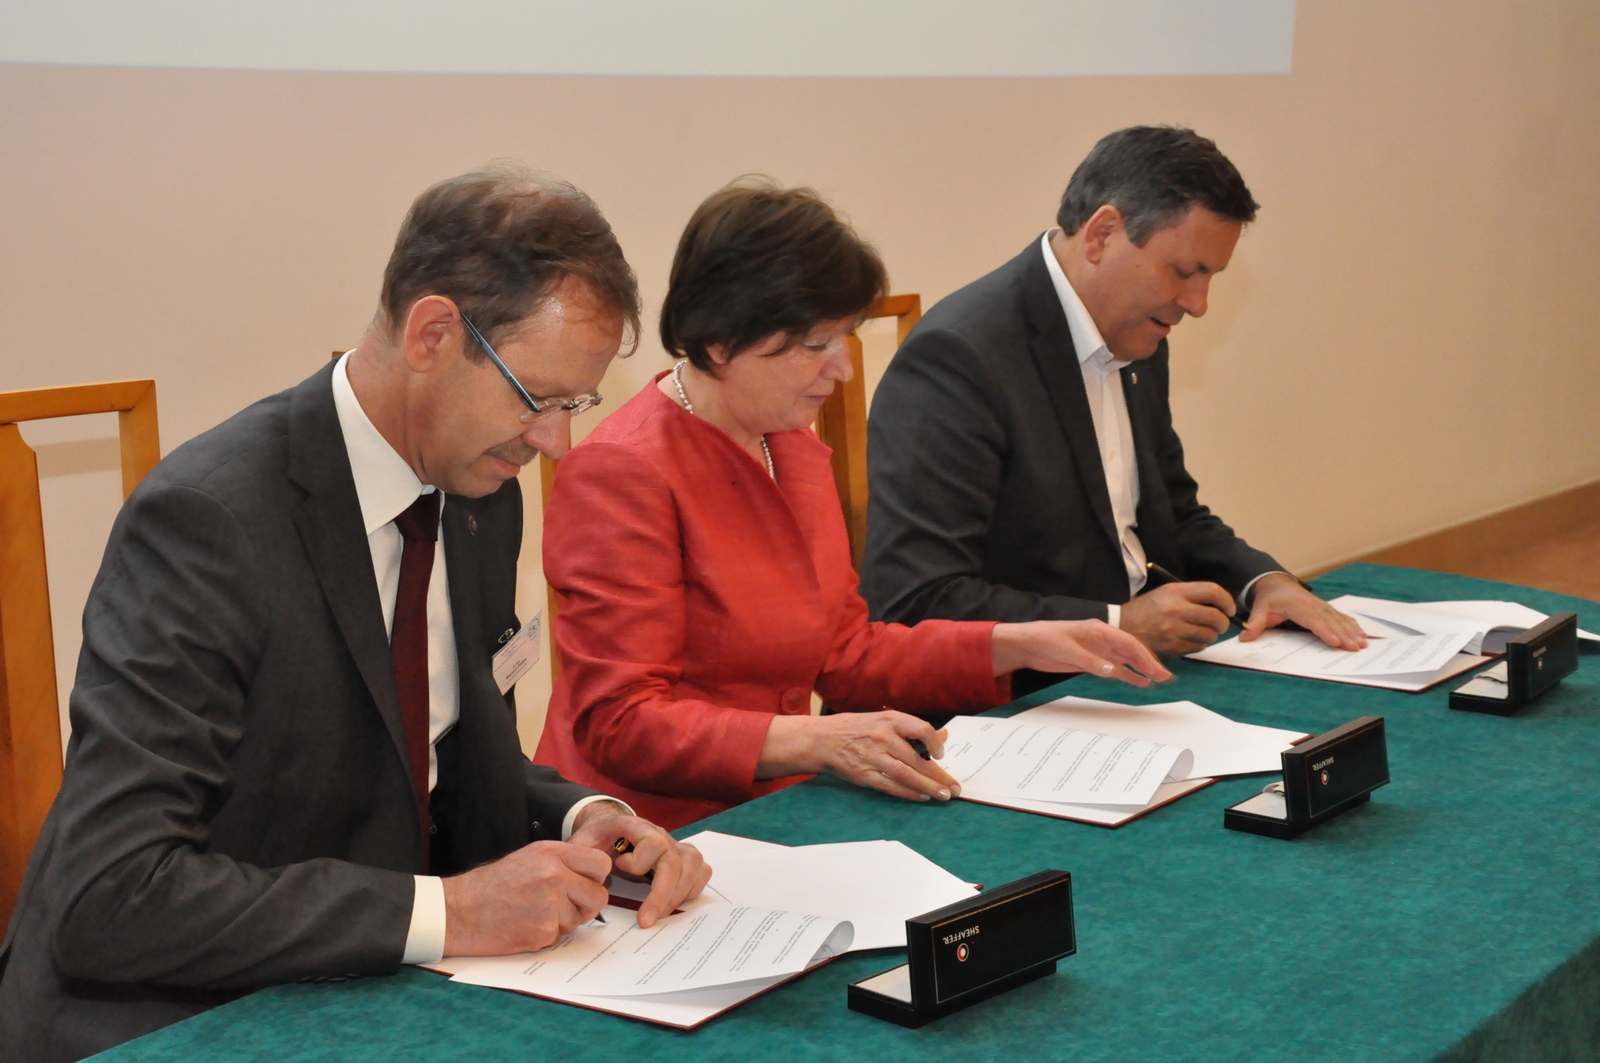 Podpisanie porozumienia o współpracy podczas jubileuszu 95-lecia GUM: Troje elegancko ubranych ludzi (dwóch mężczyzn i kobieta) siedzi przy stole i podpisuje dokumenty. 